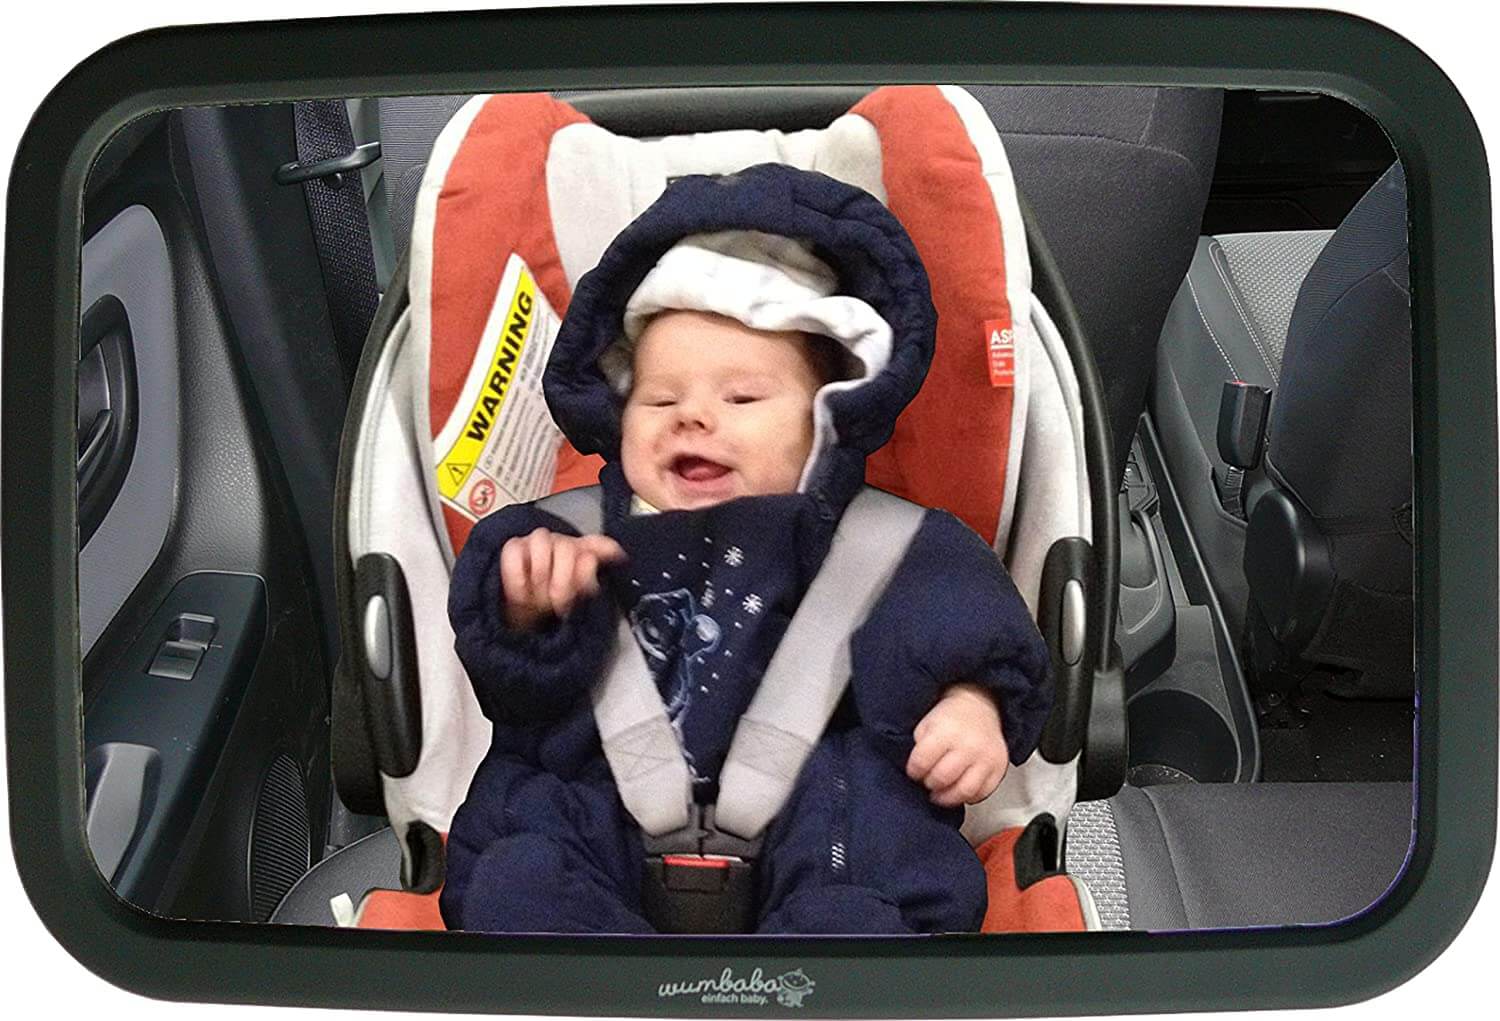 Wumbi Rücksitzspiegel Autospiegel Baby Erstausstattung Autositzspiegel  Bruchsicher